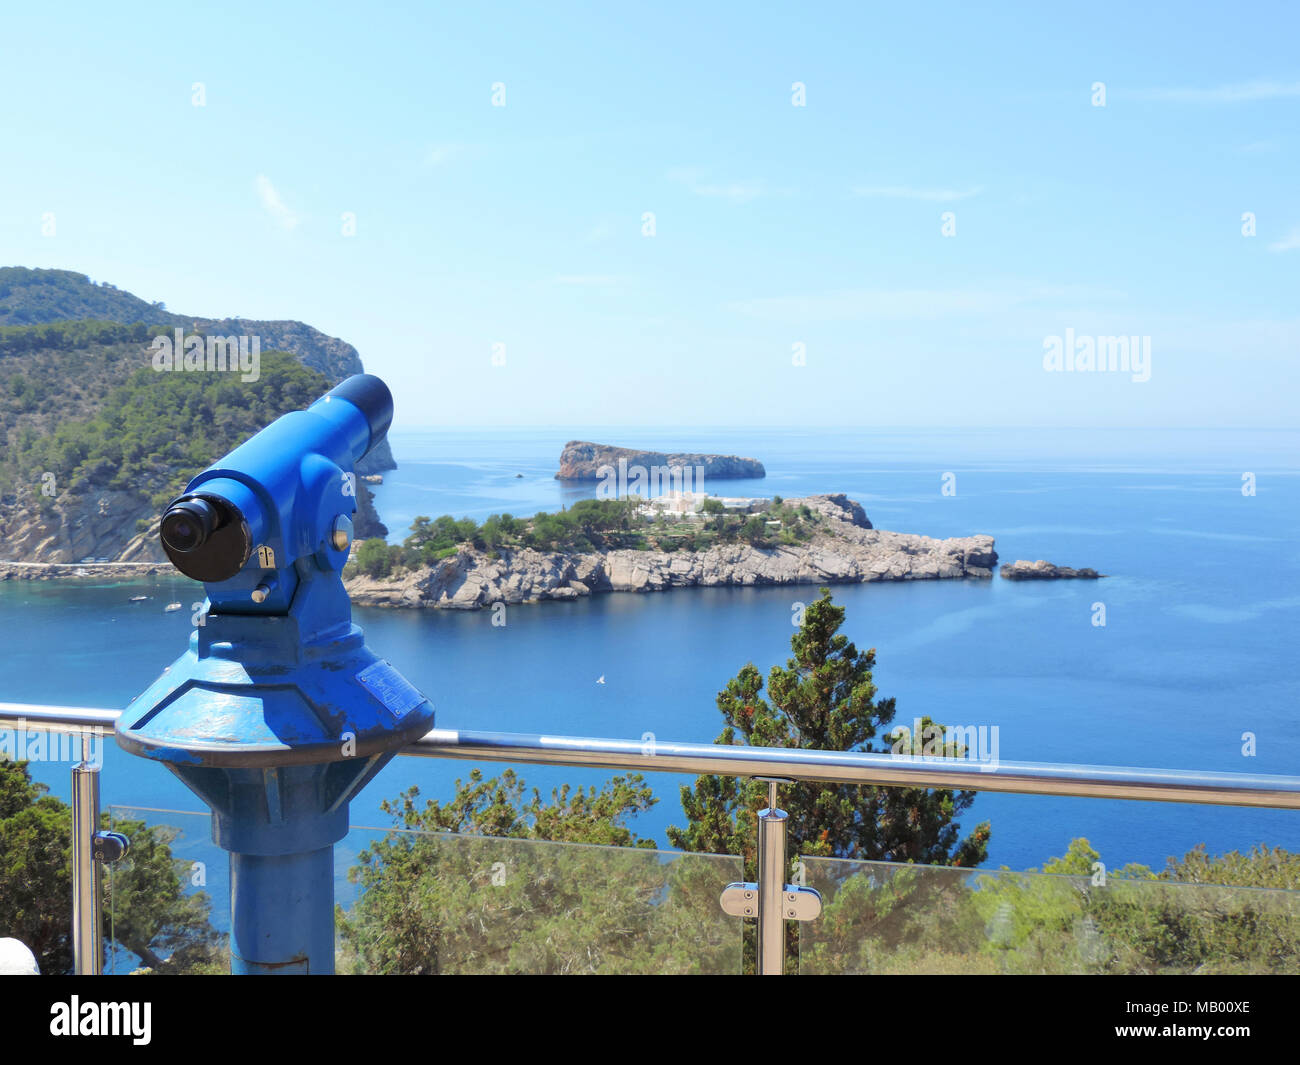 Aussichtspunkt mit Fernglas oder Teleskop. Ibiza Aussichtspunkt auf einer Klippe Küste. Stockfoto